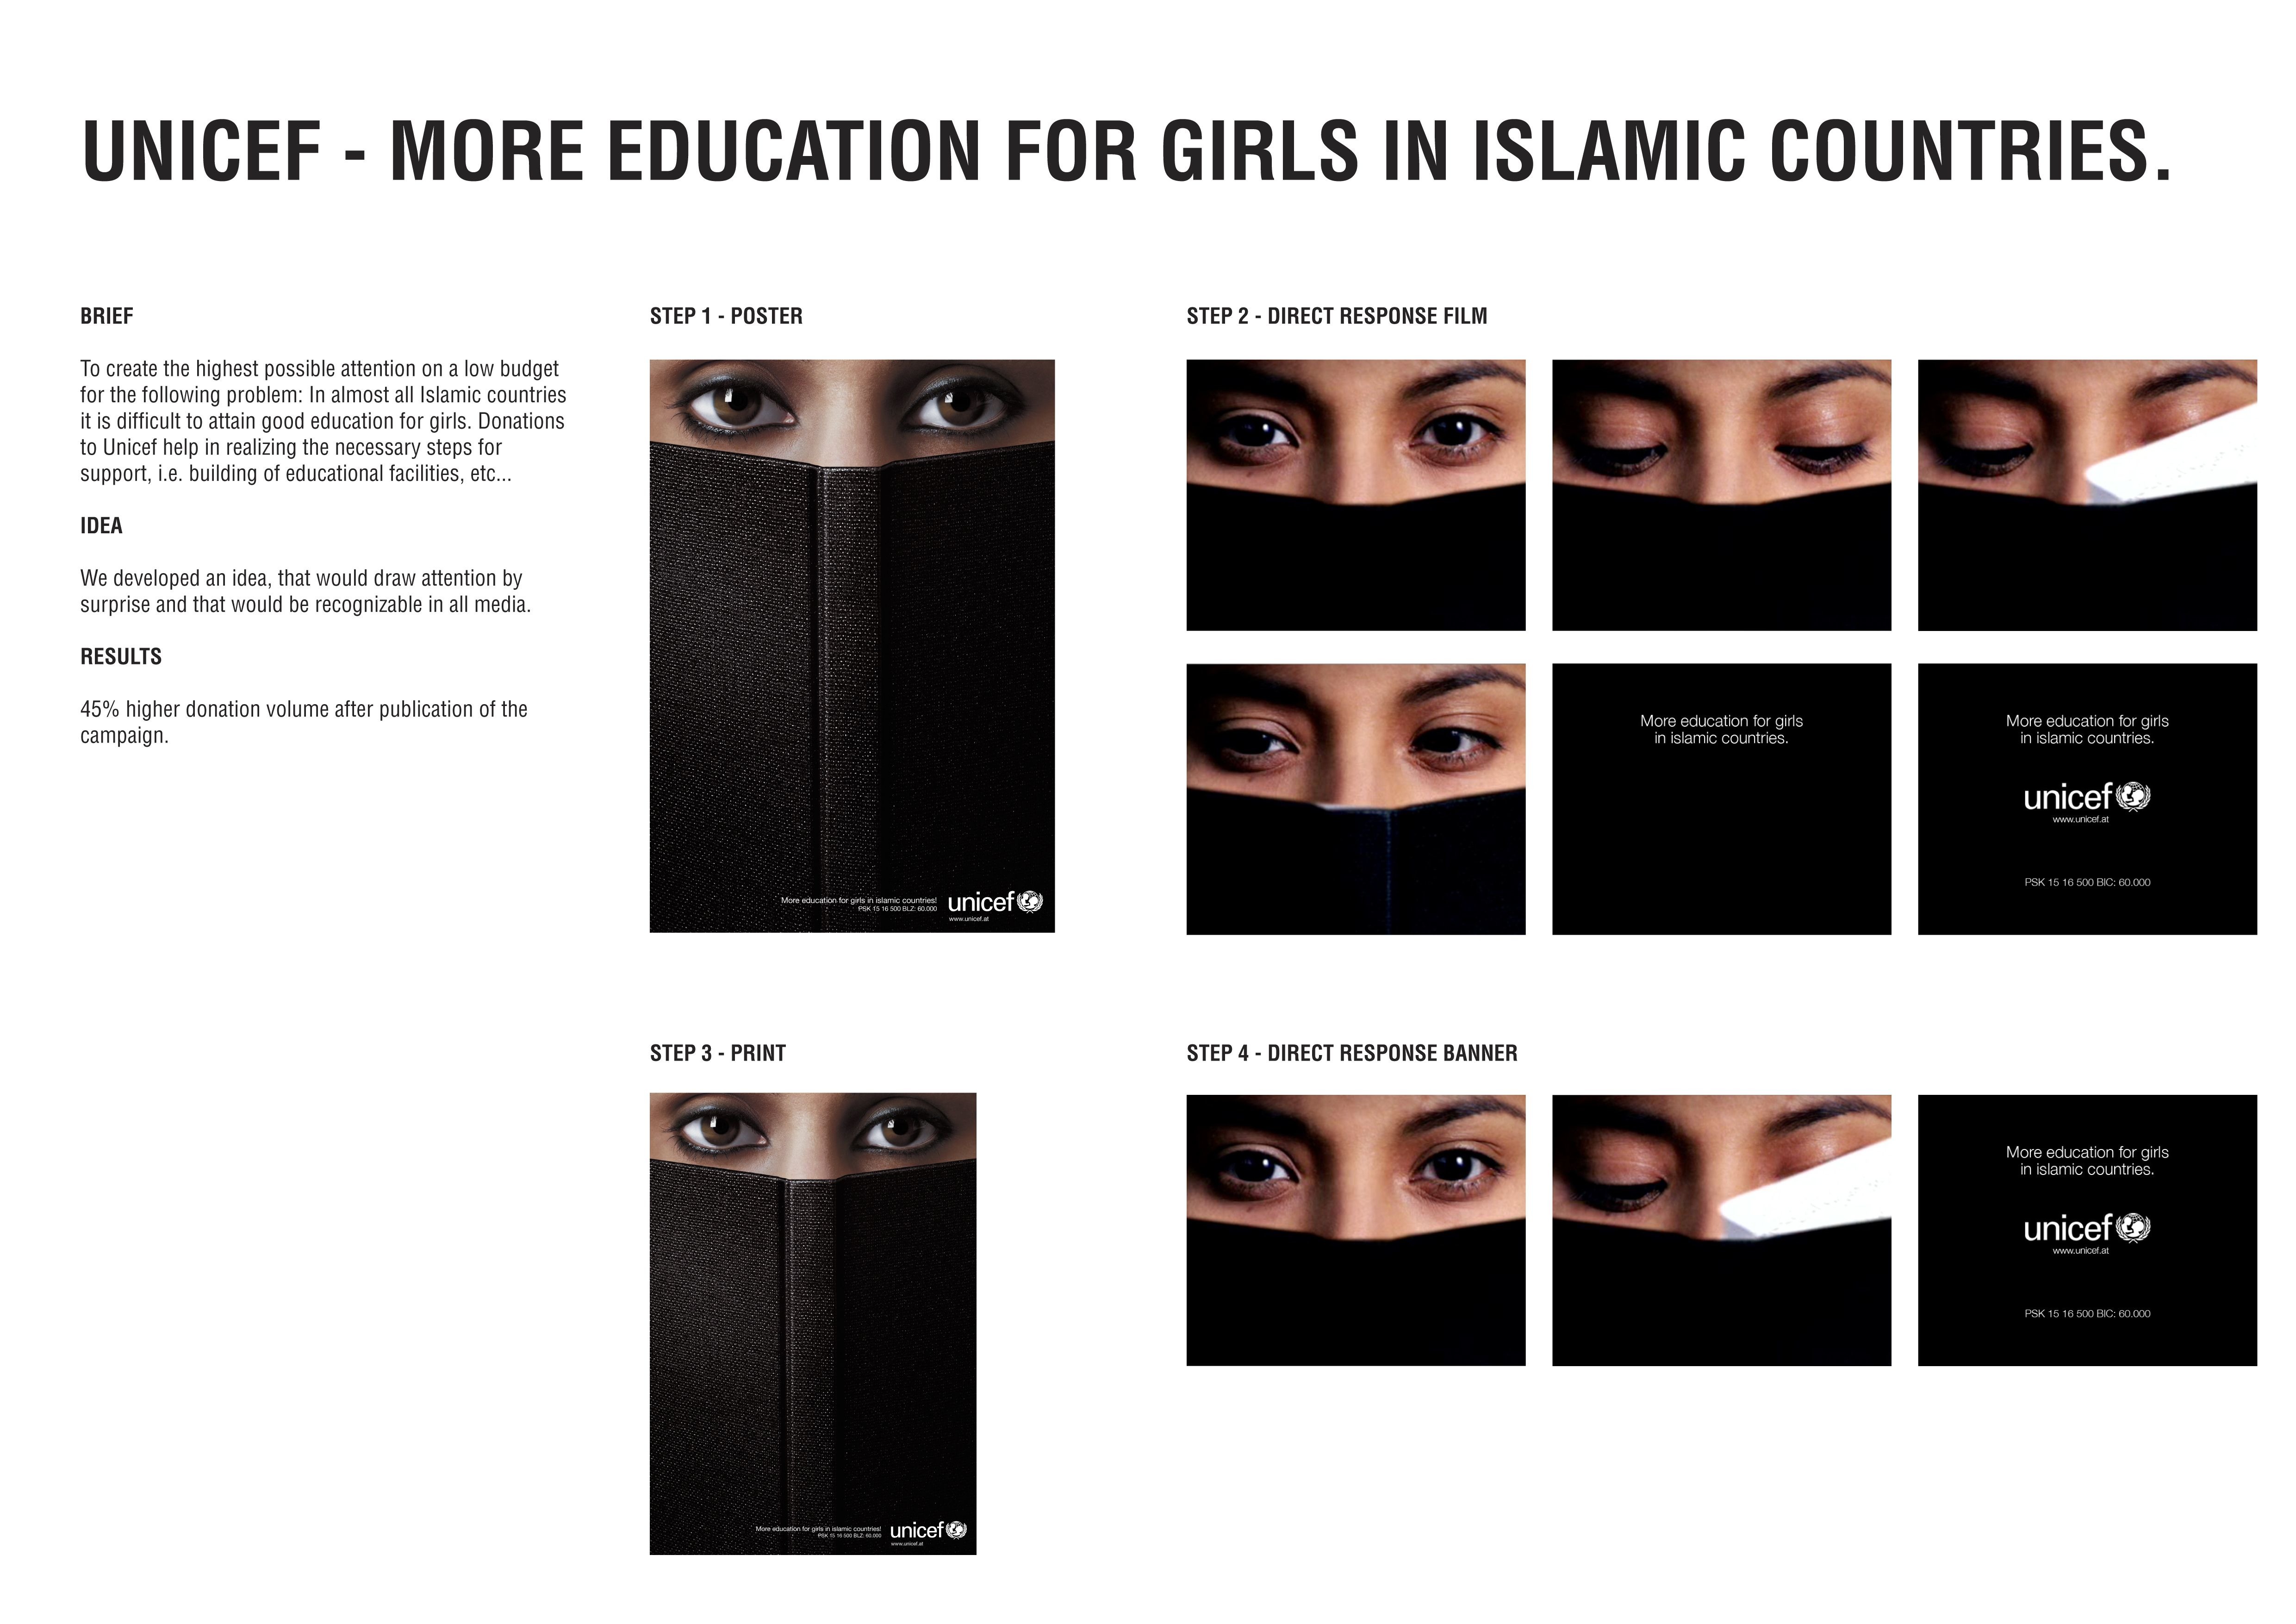 EDUCATION FOR GIRLS